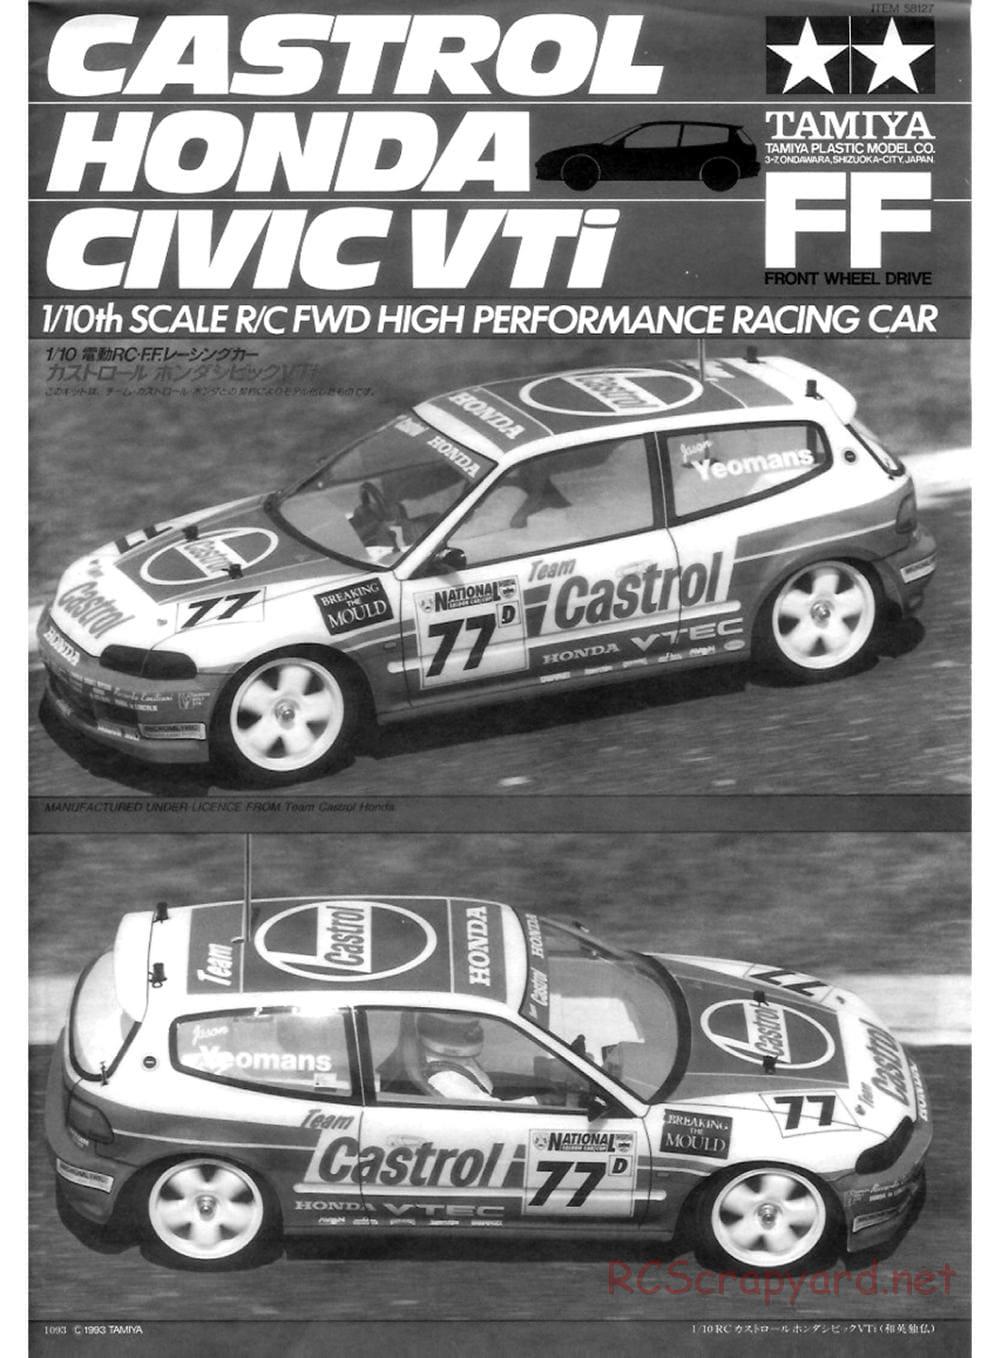 Tamiya - Castrol Honda Civic VTi - FF-01 Chassis - Manual - Page 1